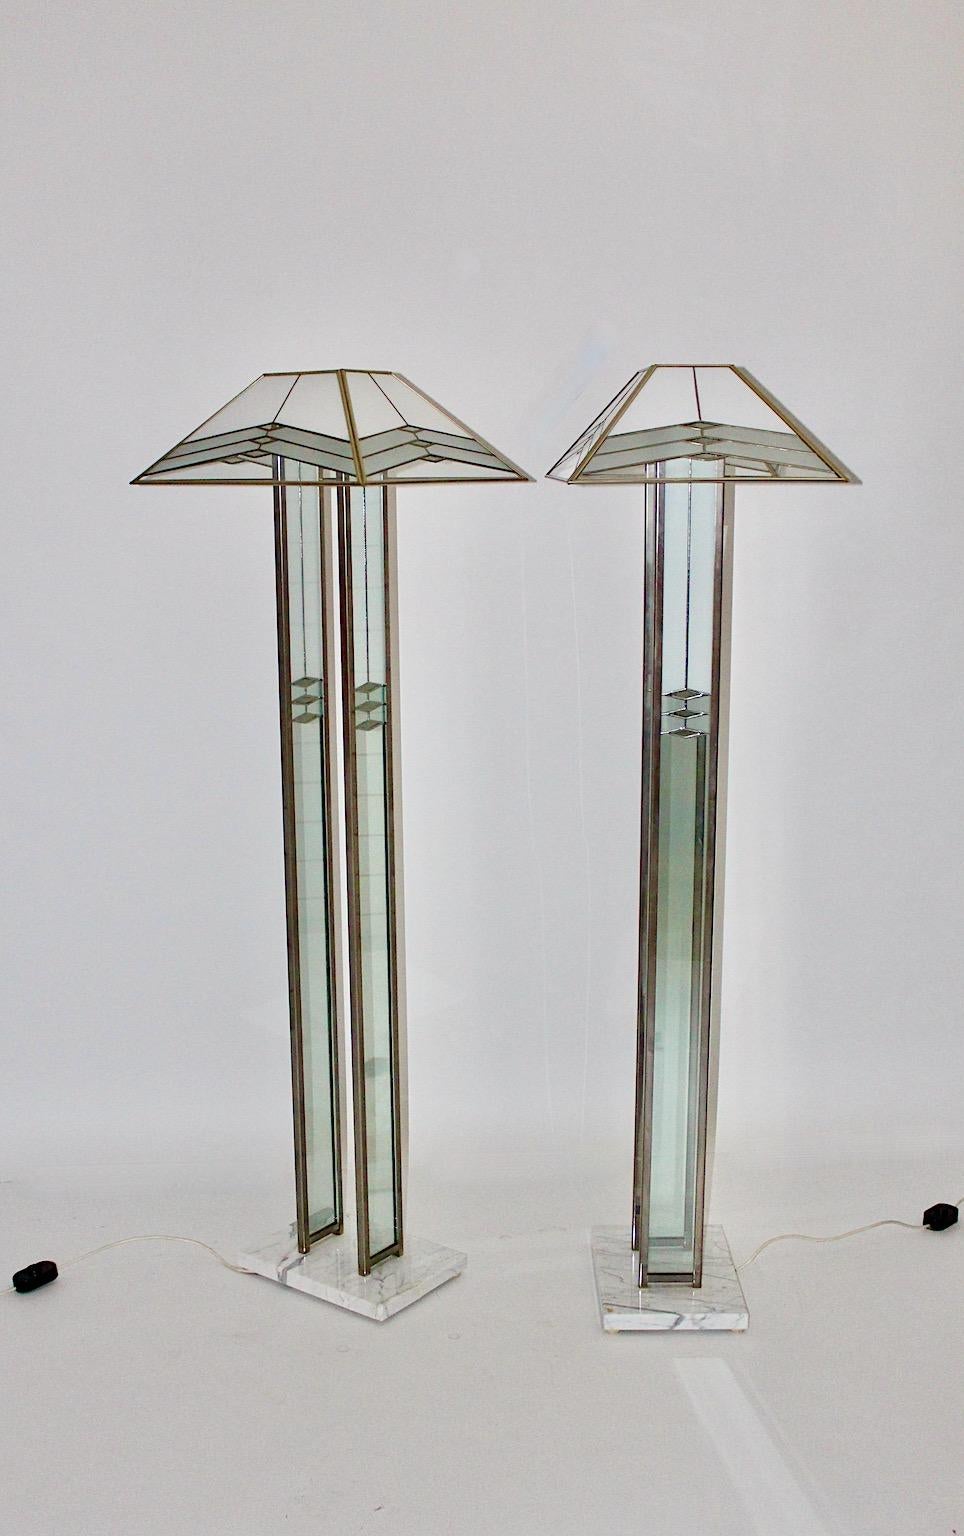 Paire de lampadaires vintage de style Hollywood Regency par Albano Poli pour Poliarte 1980 Italie en marbre, verre, métal chromé et plexiglas.
Elégante paire de lampadaires dans les tons laiteux et gris, si vous tombez amoureux de ces lampadaires,